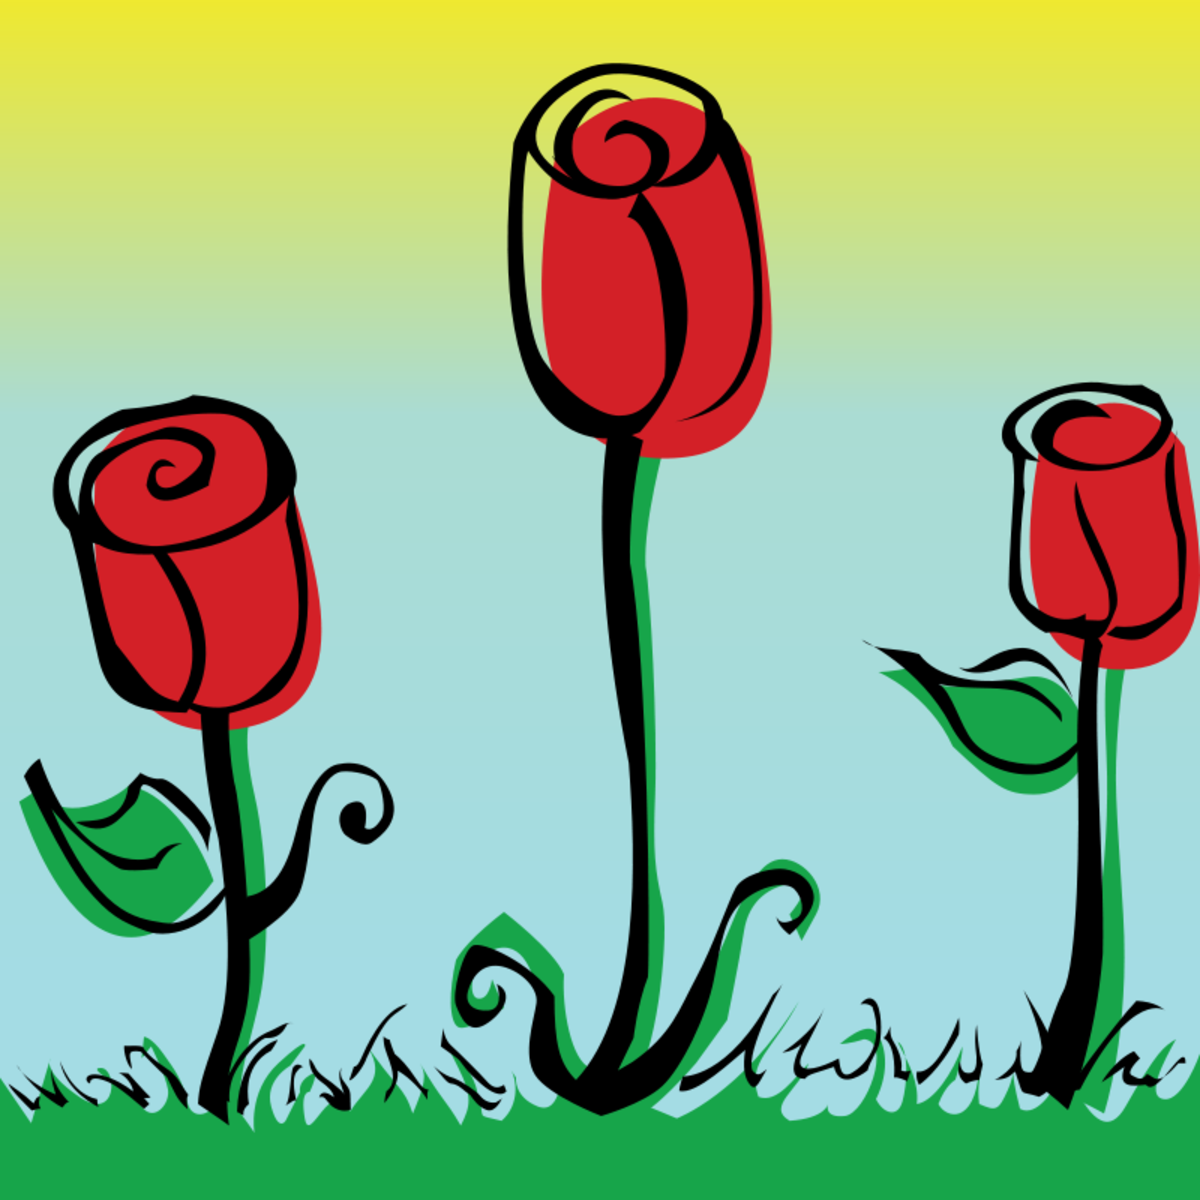 rose garden clip art free - photo #5